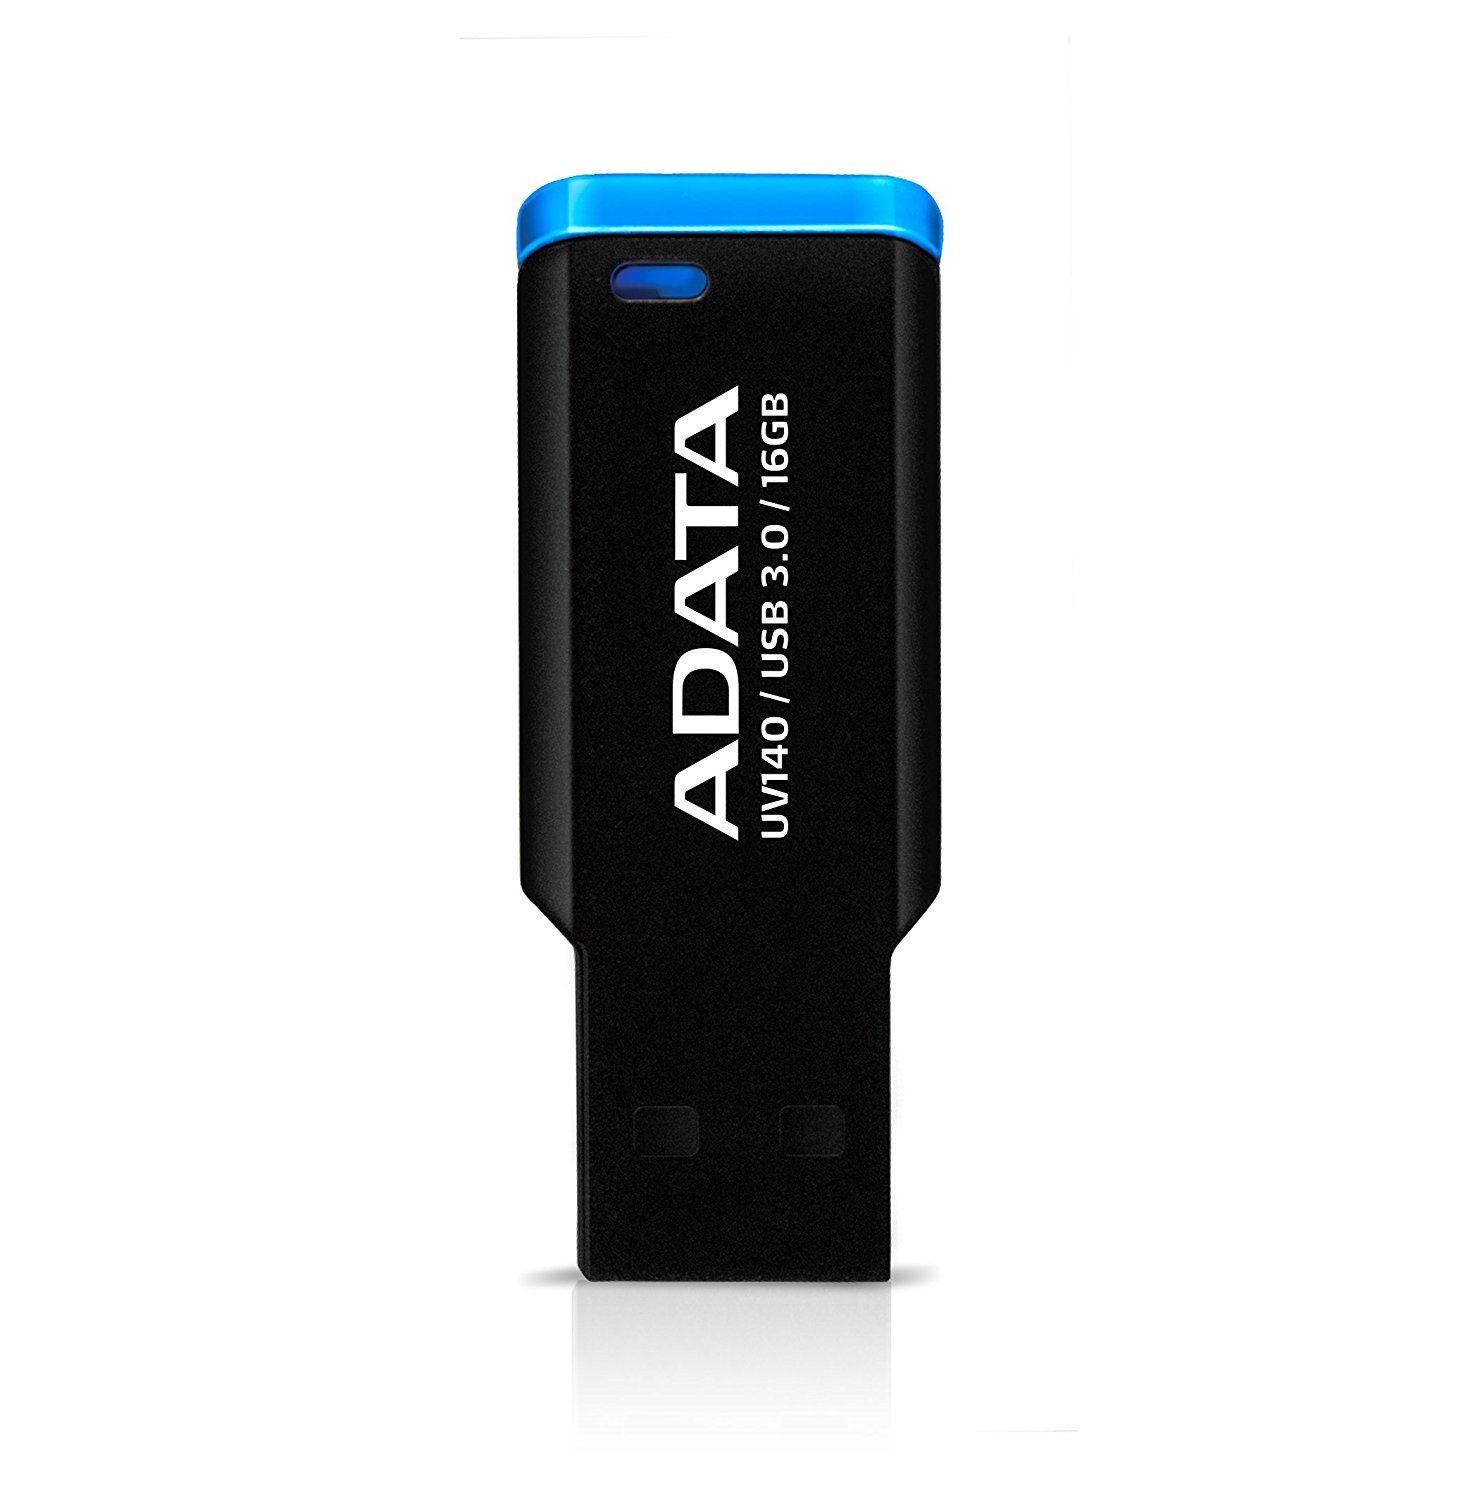 Flash Drive Adata UV140 16GB USB 3.0 Black/Blue